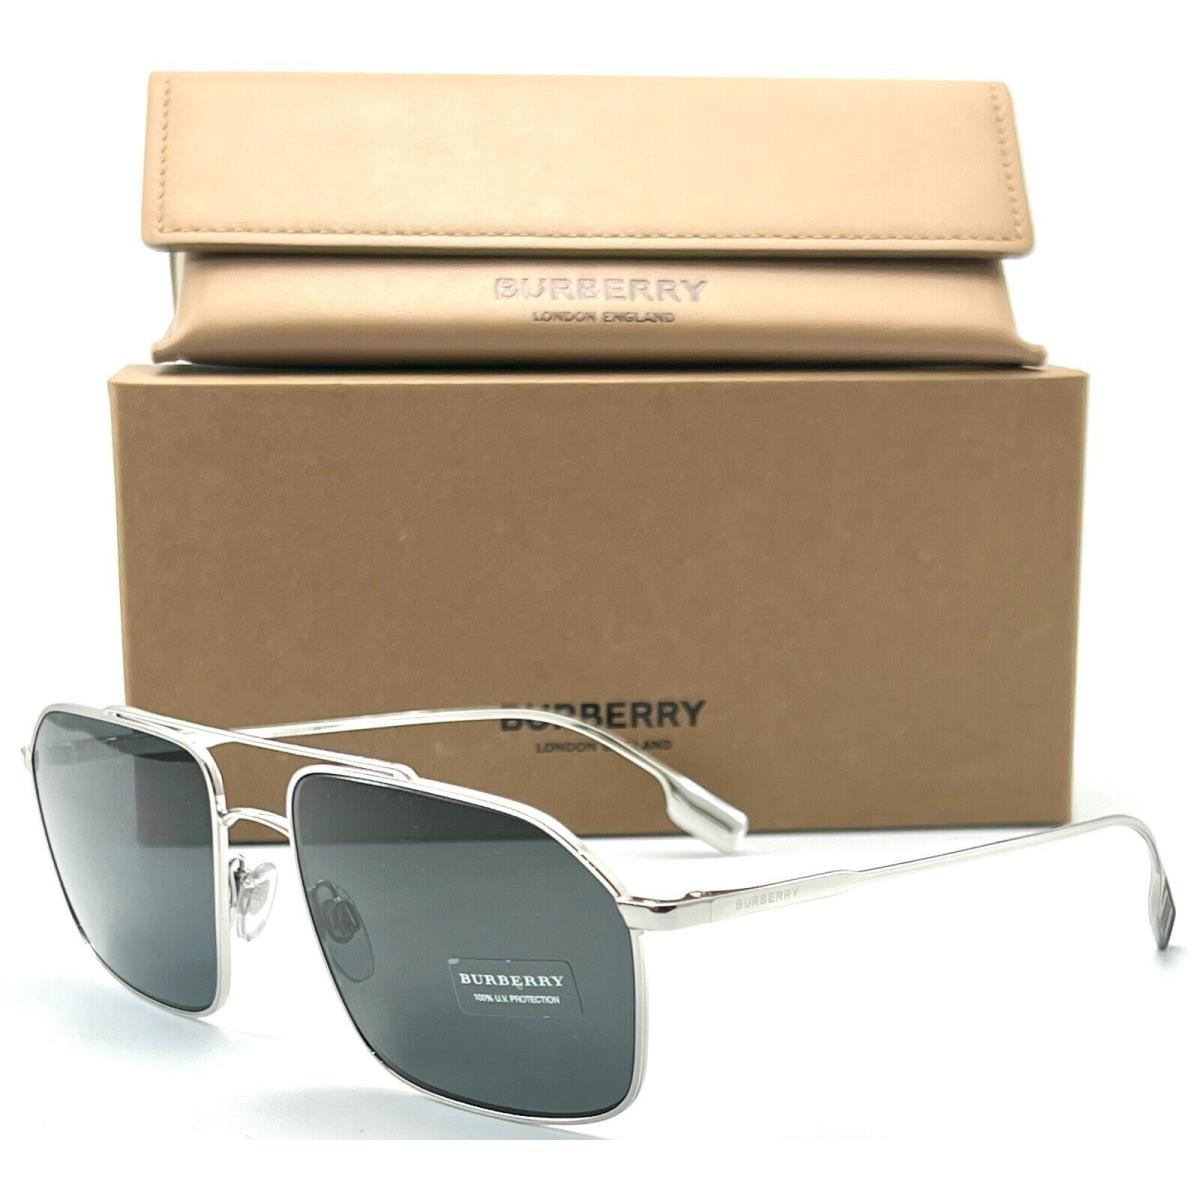 Burberry B 3130 1005/87 Silver Sunglasses 59-17 145 W/case